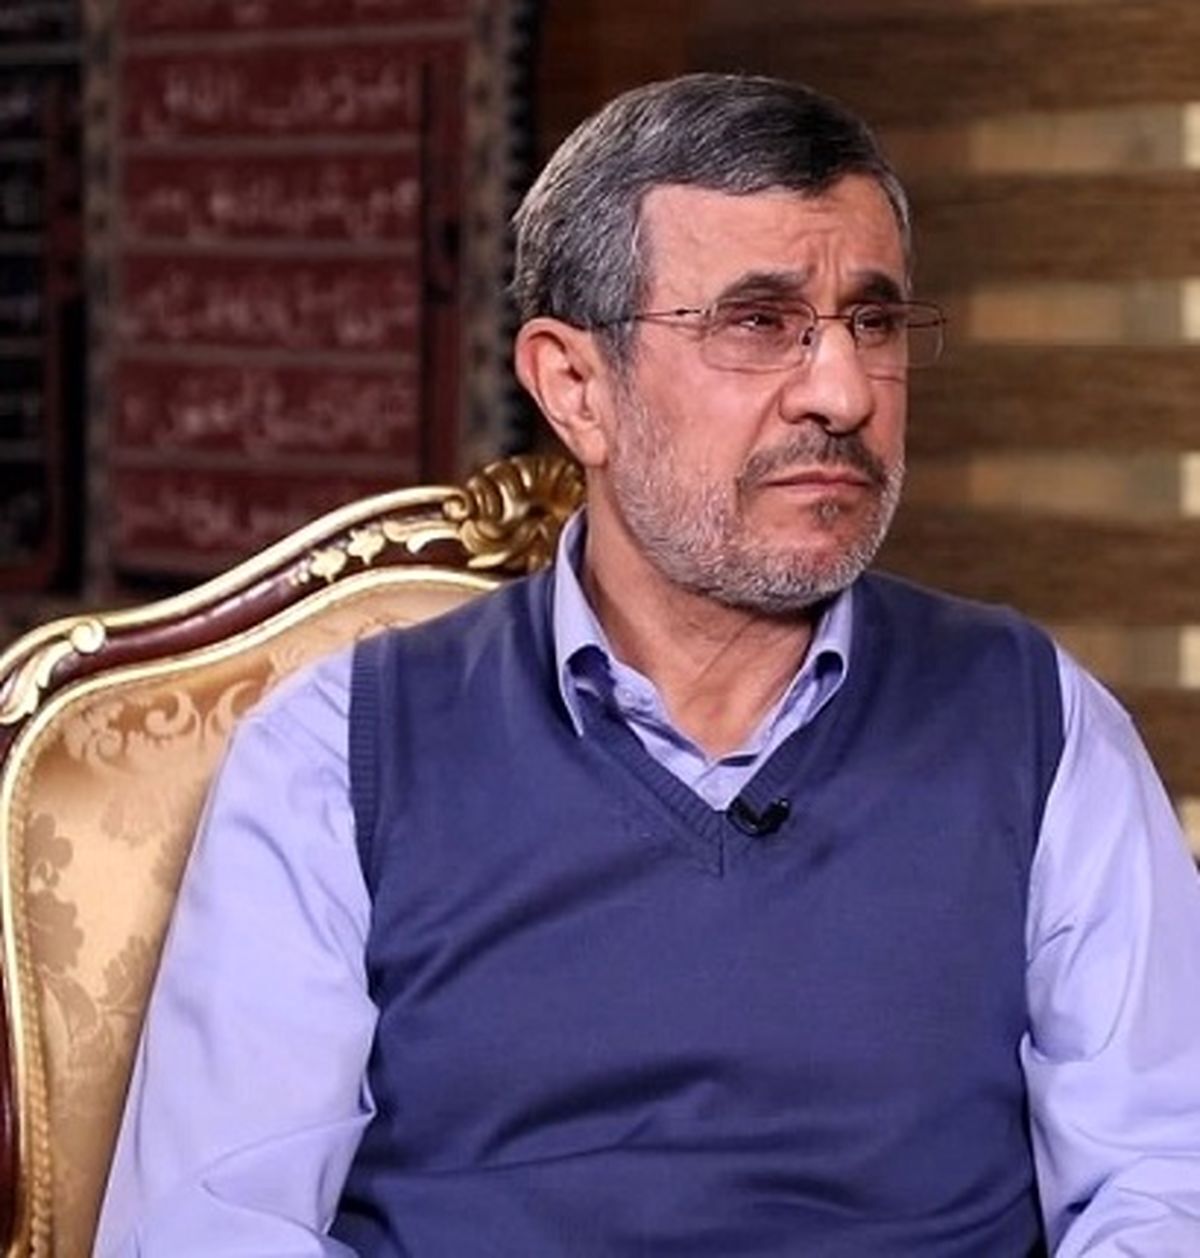 احمدی نژاد زیر تابوت وزیر سابقش را گرفت + عکس